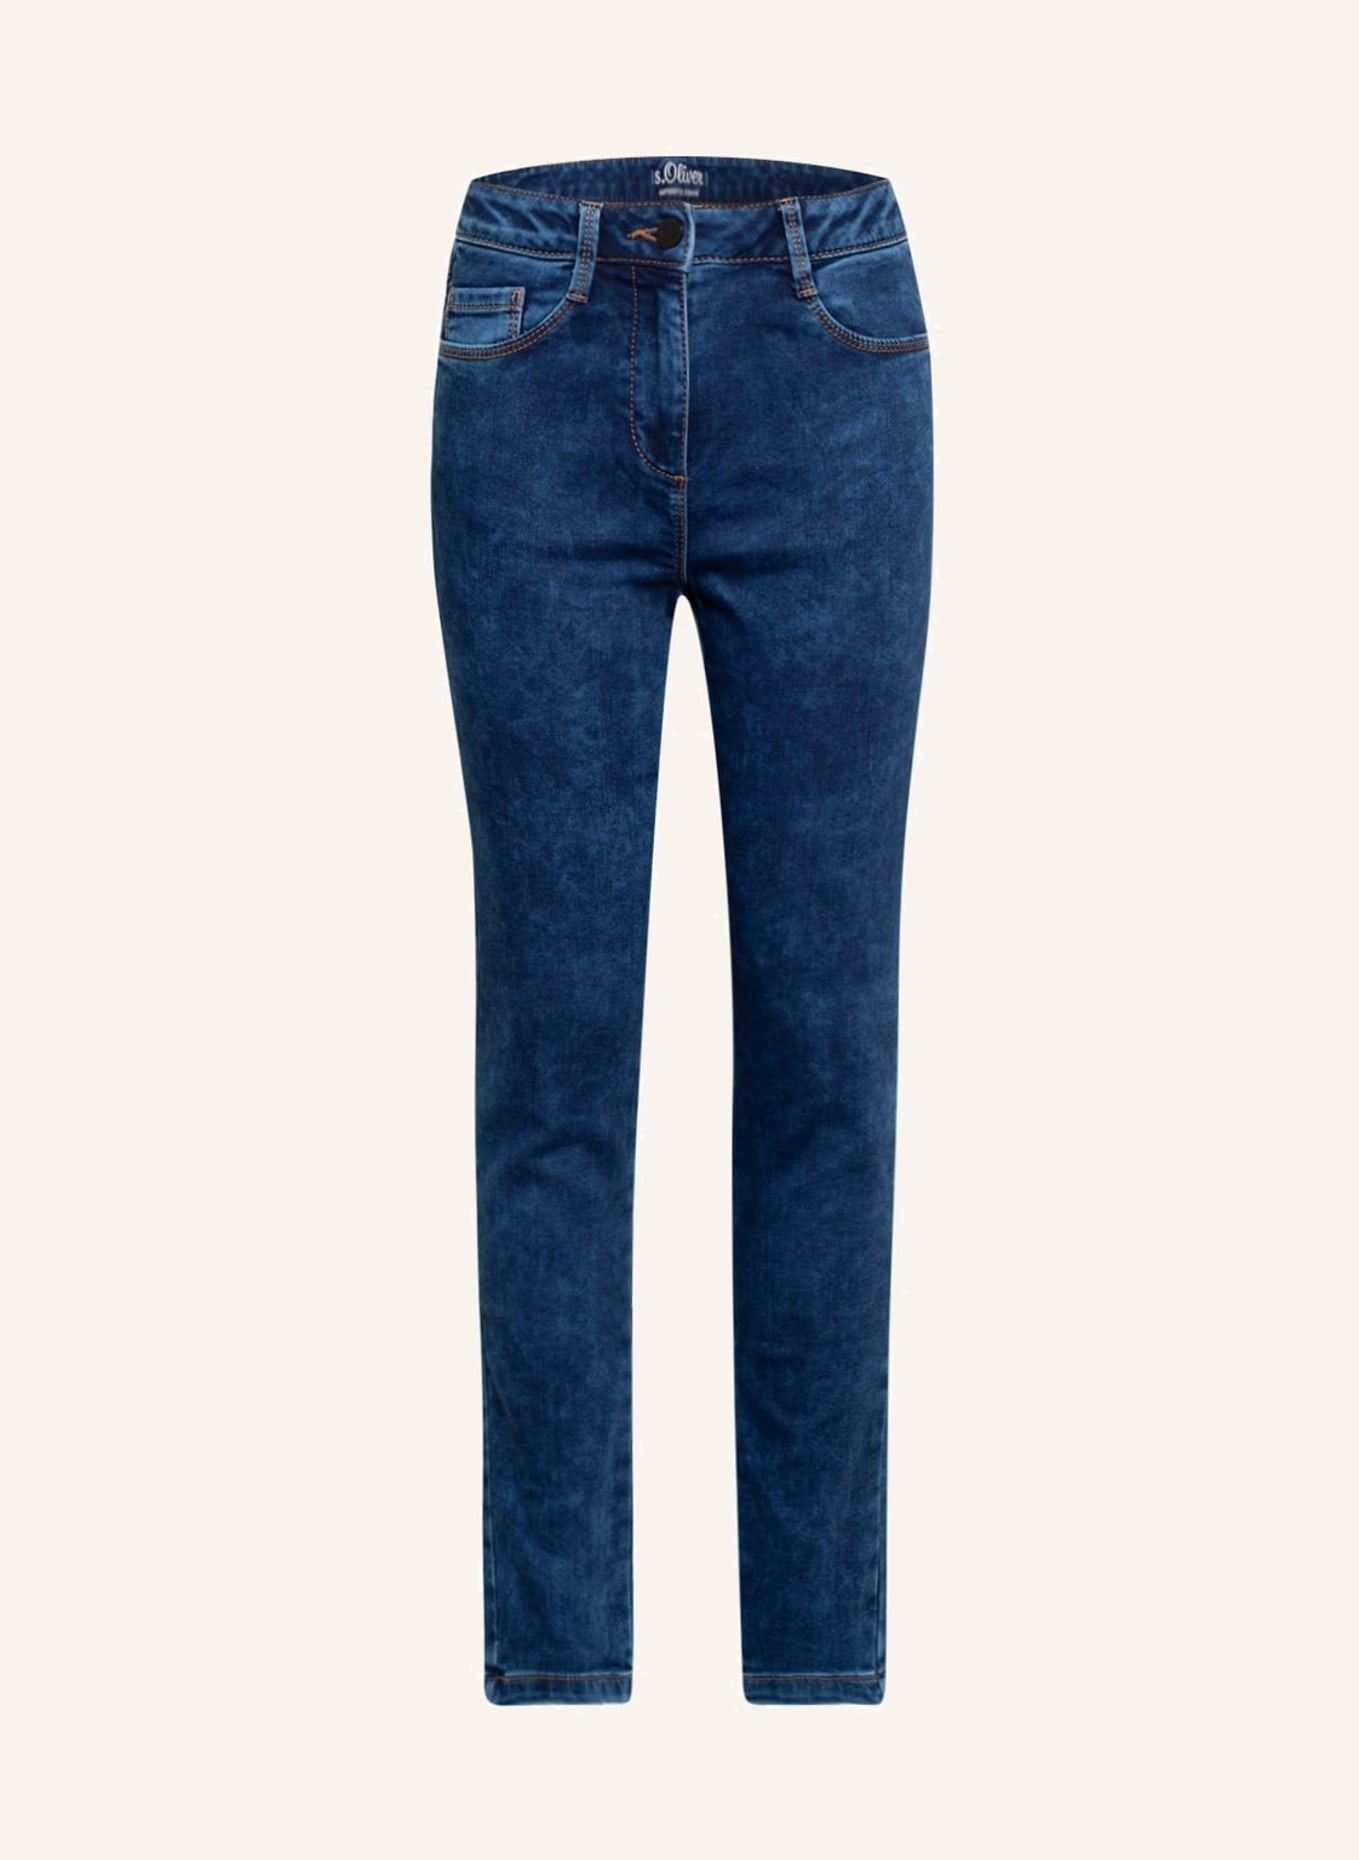 s.Oliver RED Jeans Slim Fit , Farbe: 58Z5 dark blue (Bild 1)